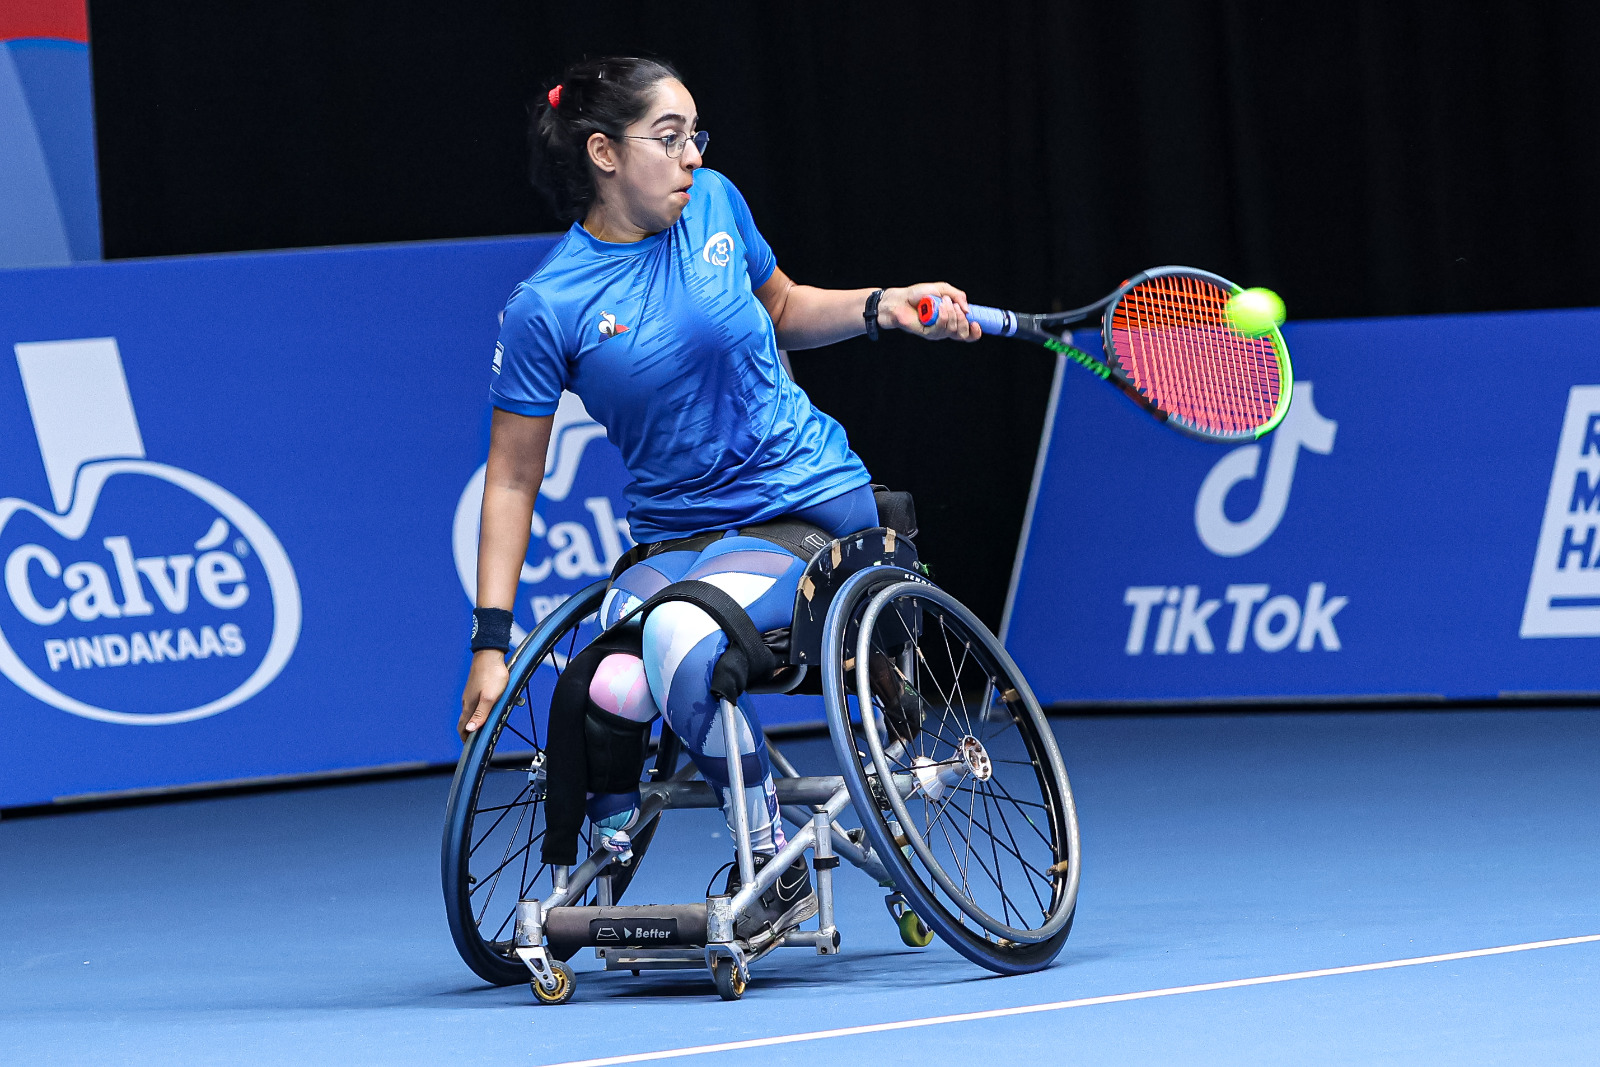 שחקנית הטניס בכיסאות גלגלים מעיין זיקרי במשחקים האירופיים הפראלימפיים (צילום: לילך וייס רוזנברג)